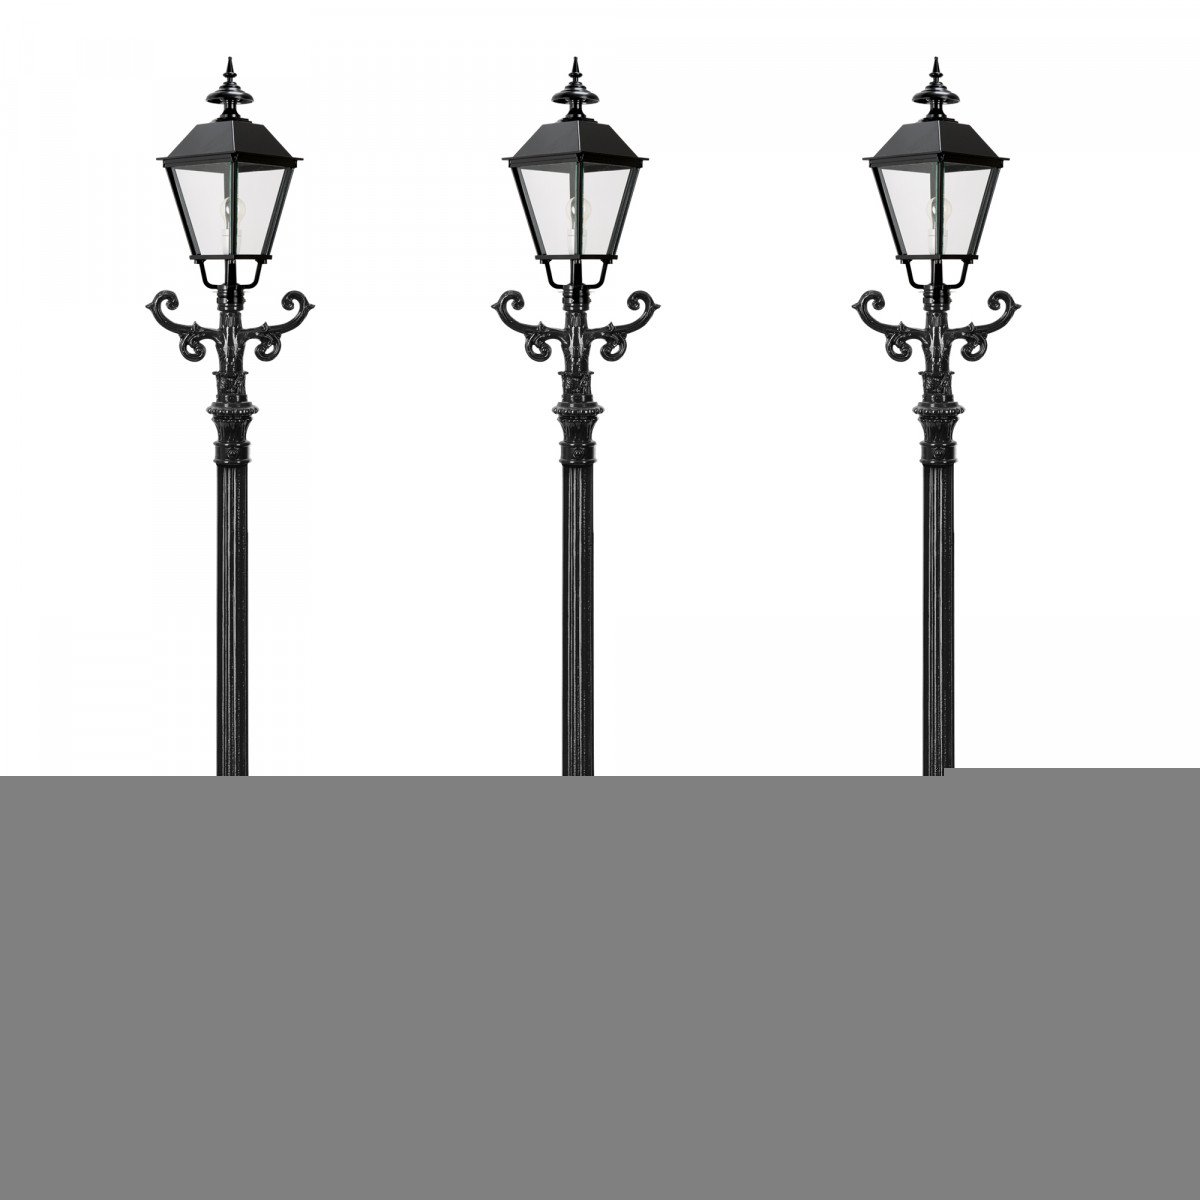 Set de 3 lampadaires de jardin Aken de KS Lighting avec lanternes carrées